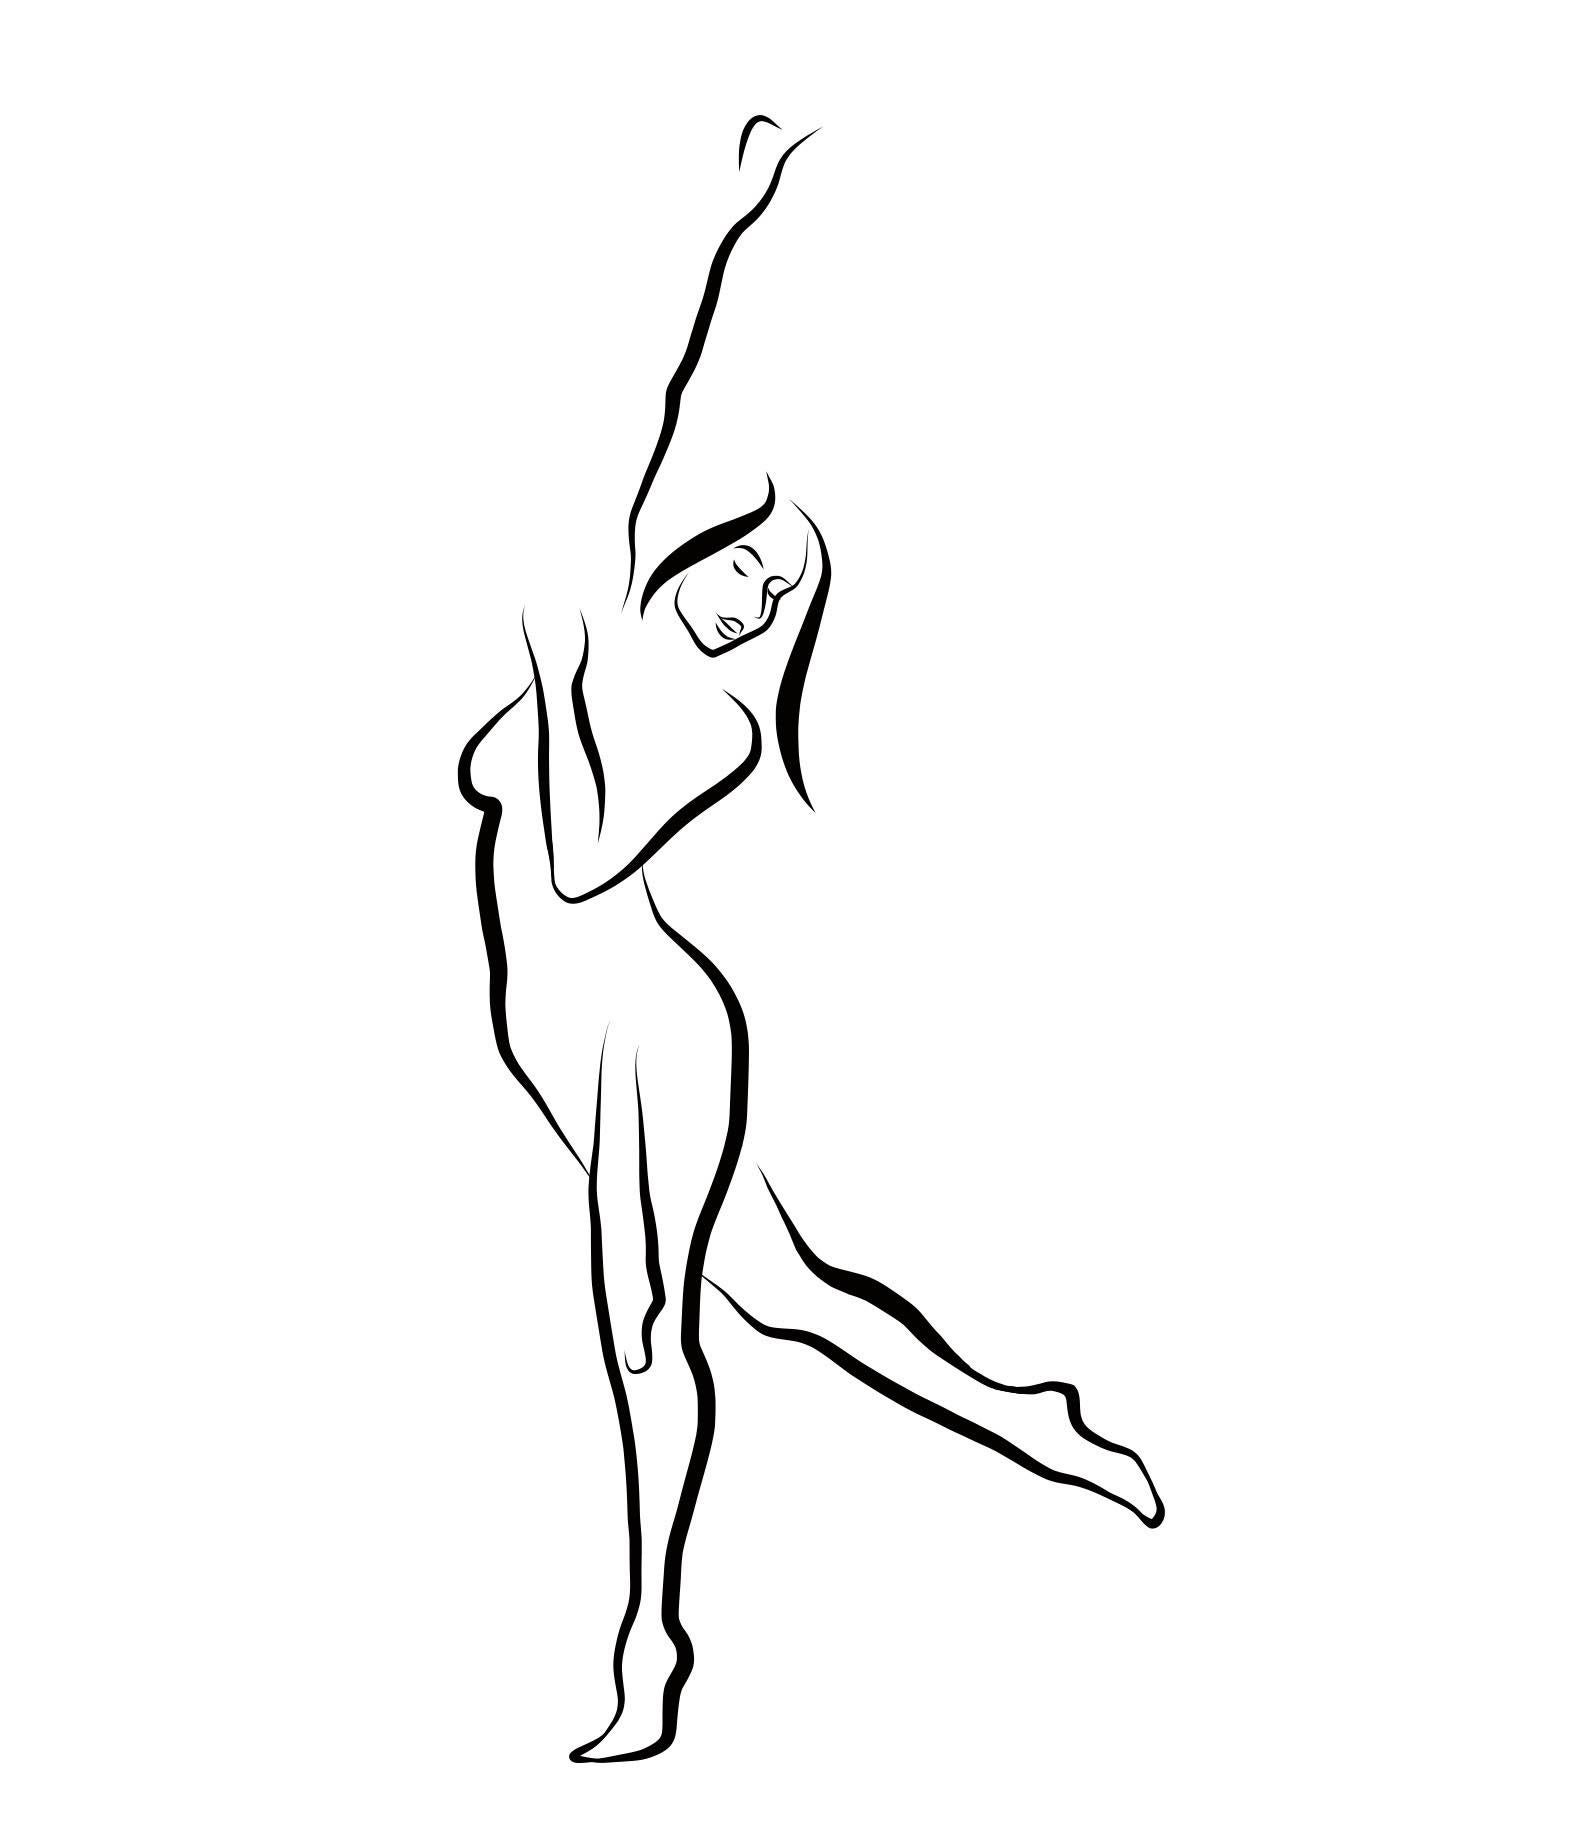 Nude Print Michael Binkley - Haiku n° 24, 1/50 - Drawing numérique représentant une femme nue dansant, bras levés